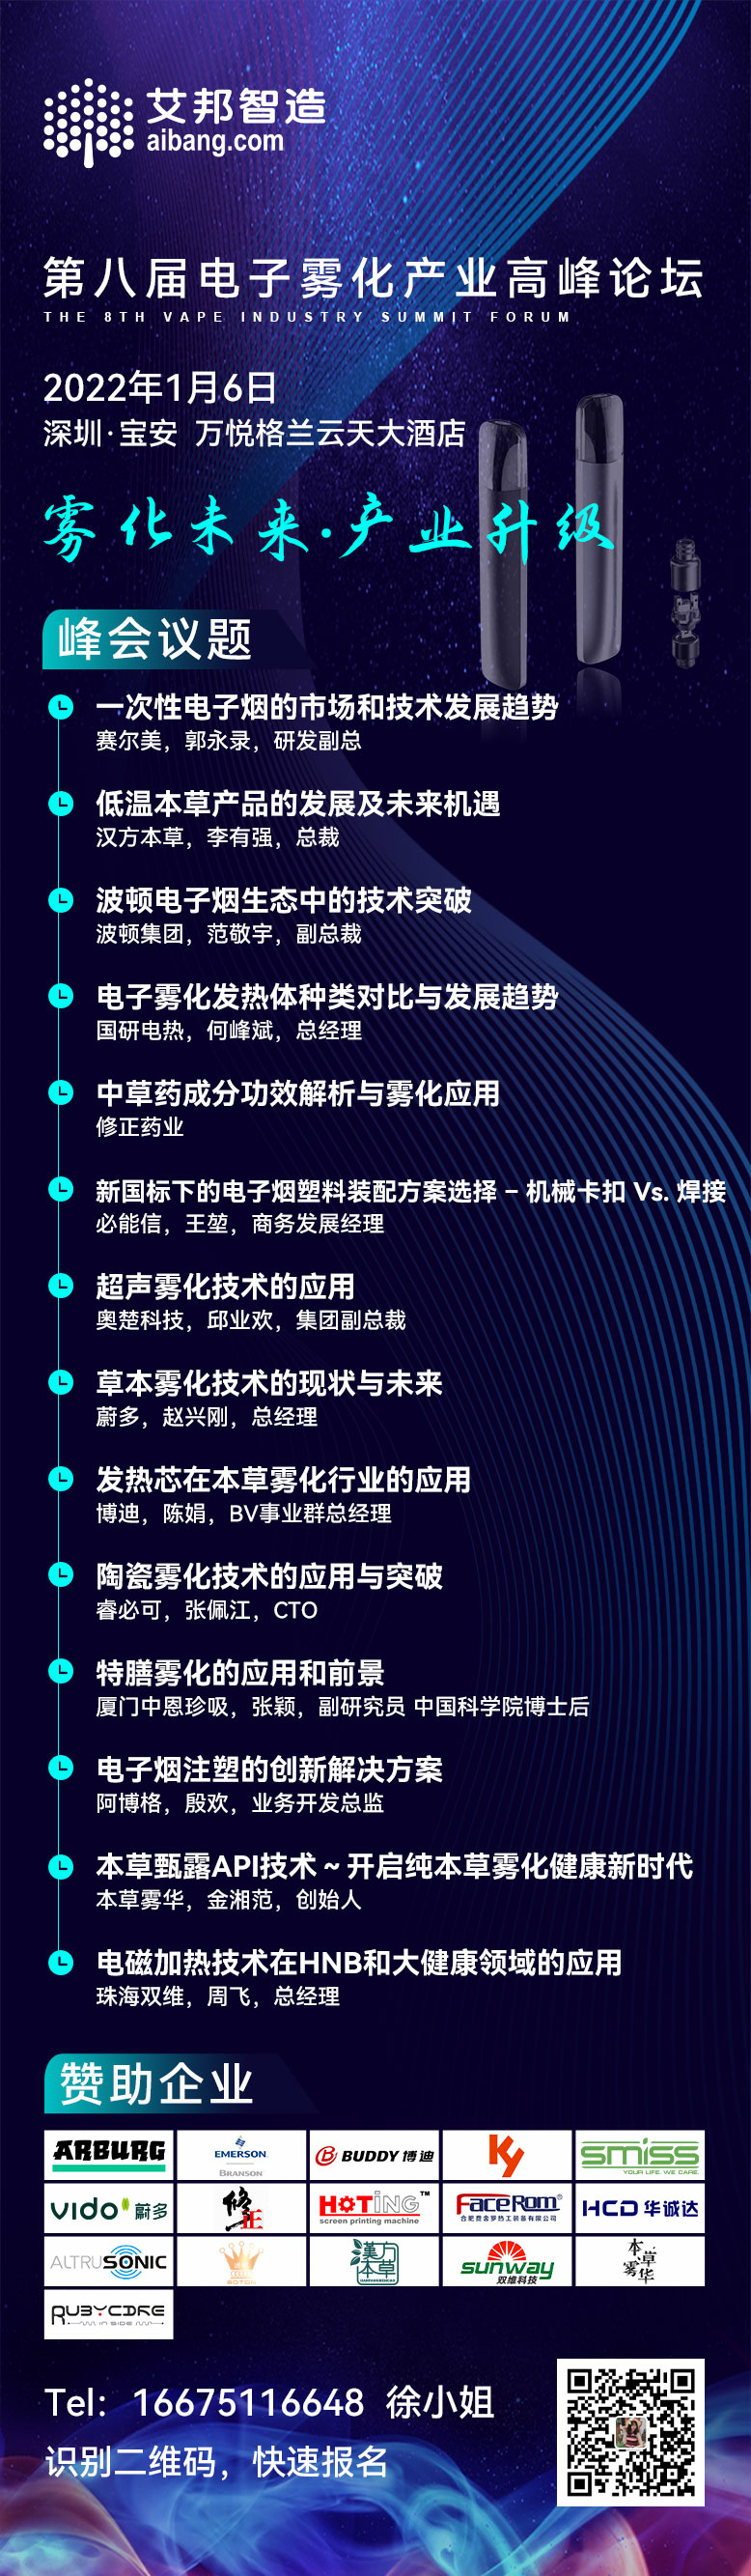 汉方本草集团将出席第八届电子雾化产业高峰论坛并做主题演讲（1月6日~深圳）